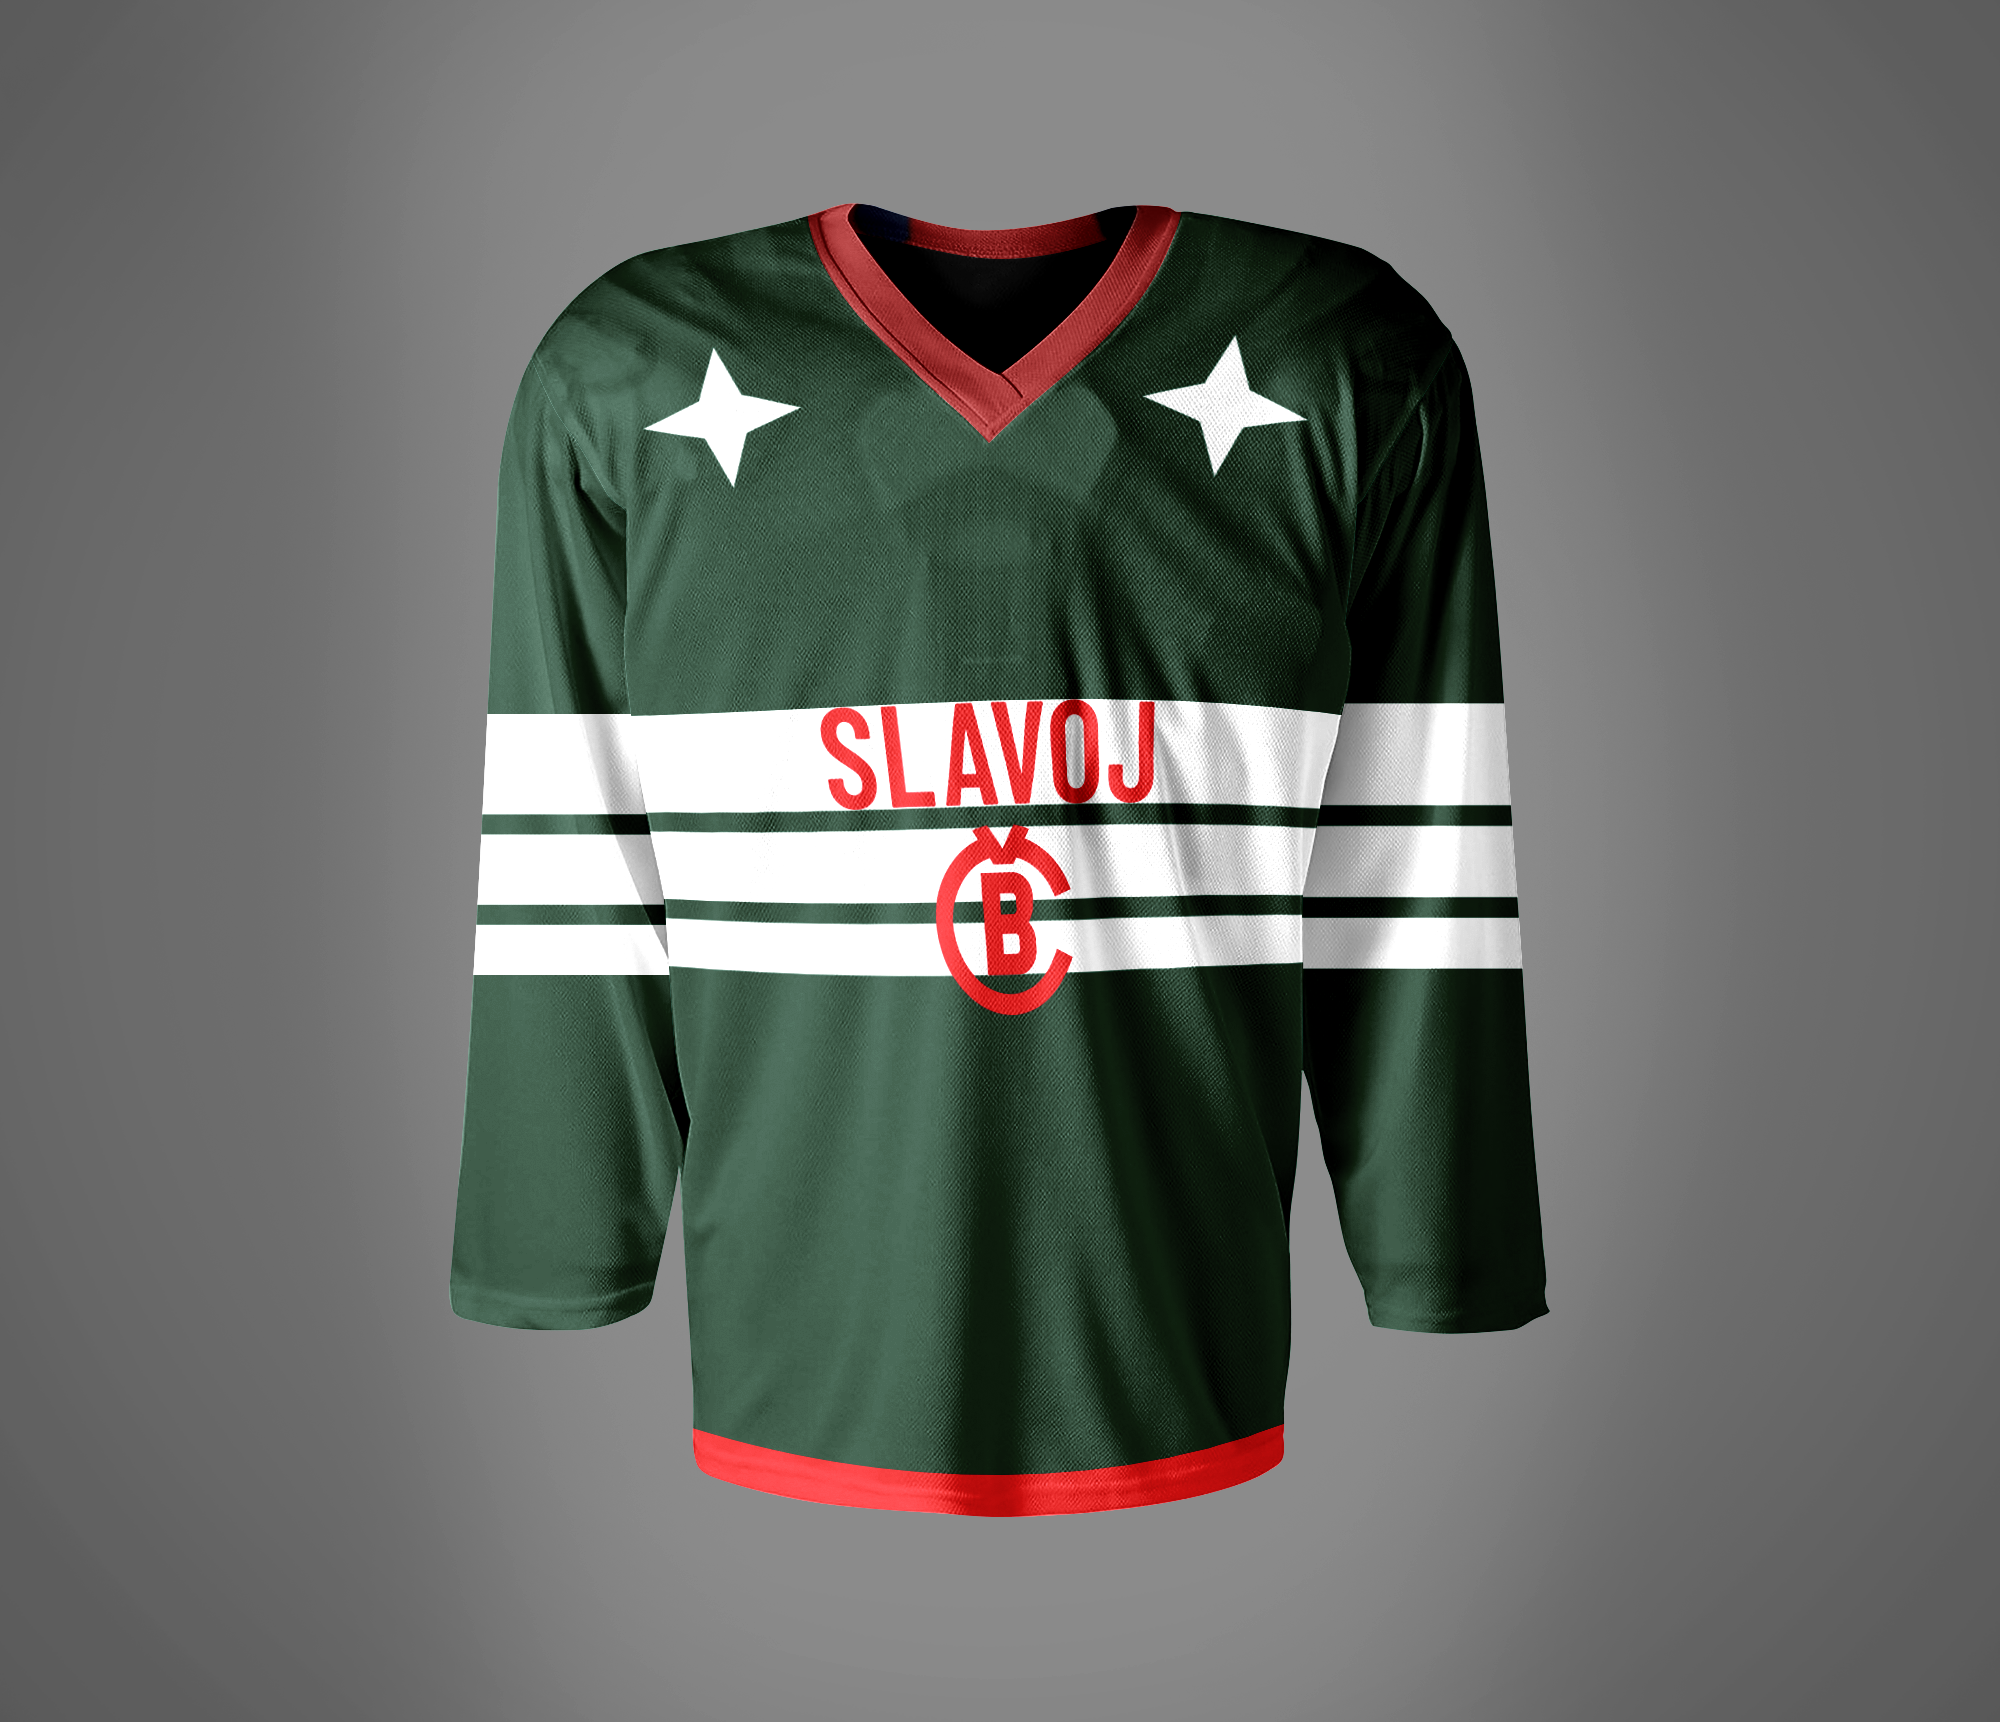 Zeleným barvám i názvu Slavoj dal klub dávno vale, tenhle nadčasový prvek z dresů Slavoje ale používá klub od letošní sezony znovu!